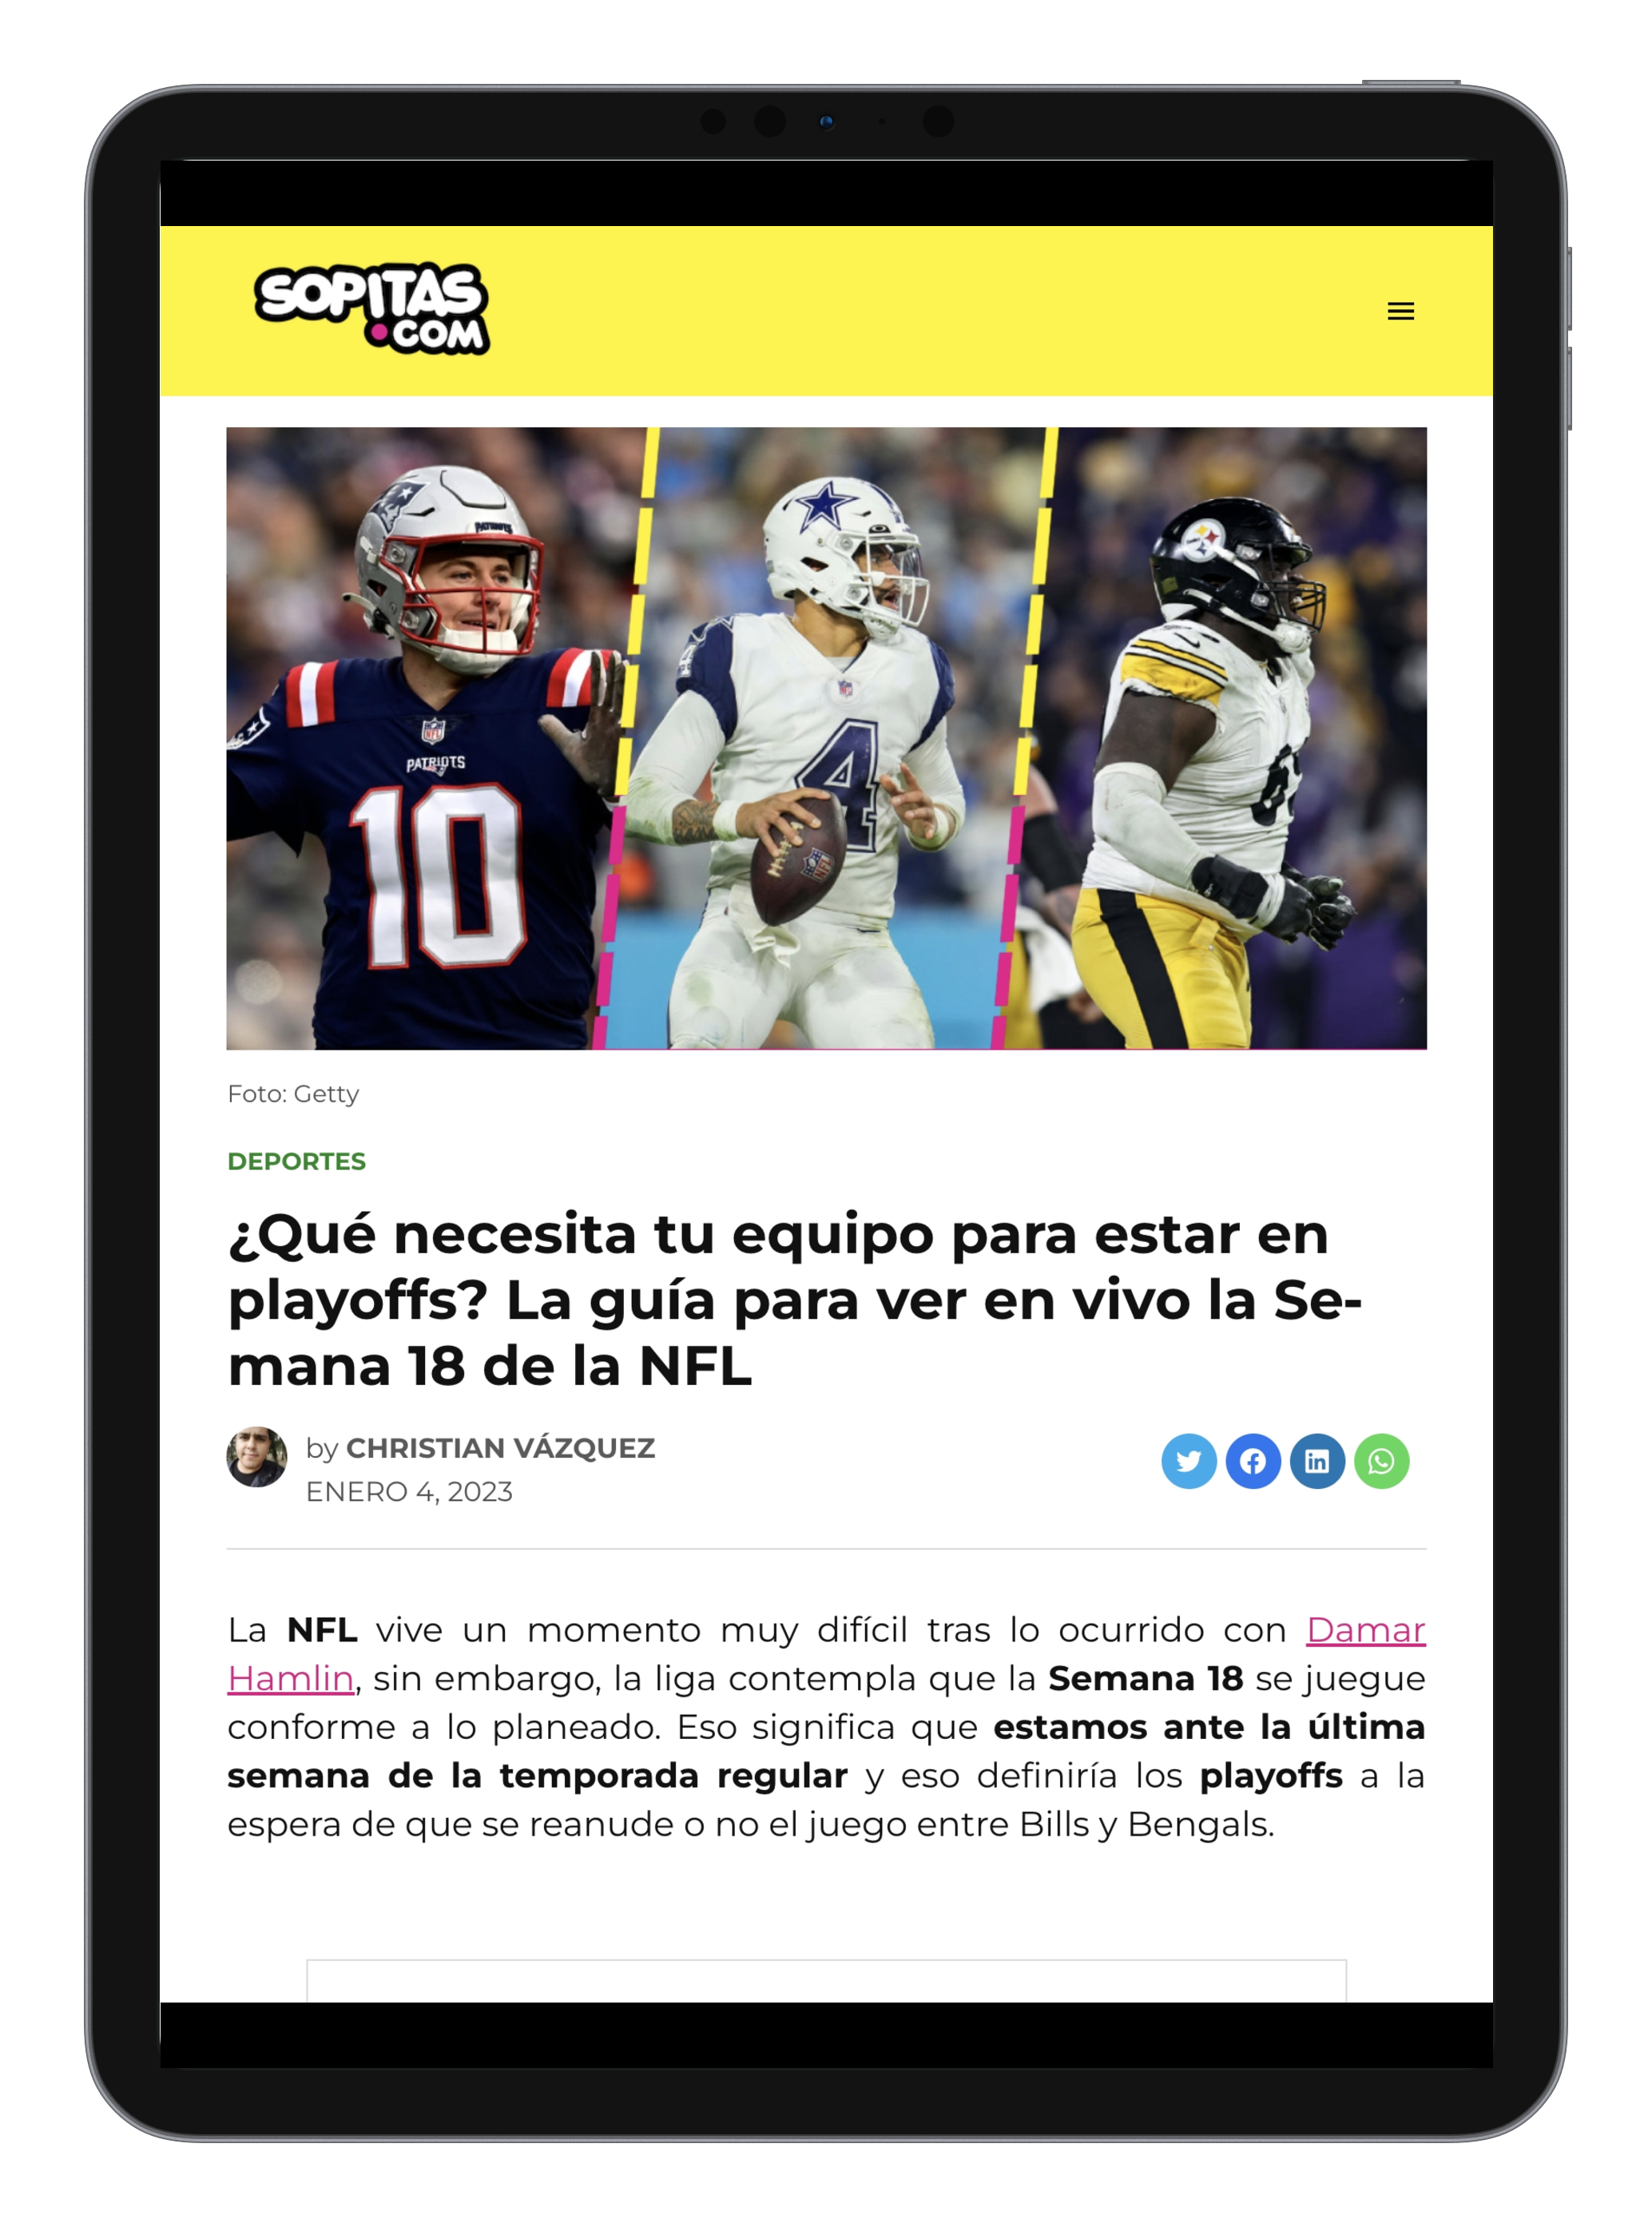 Sport content on sopitas.com website